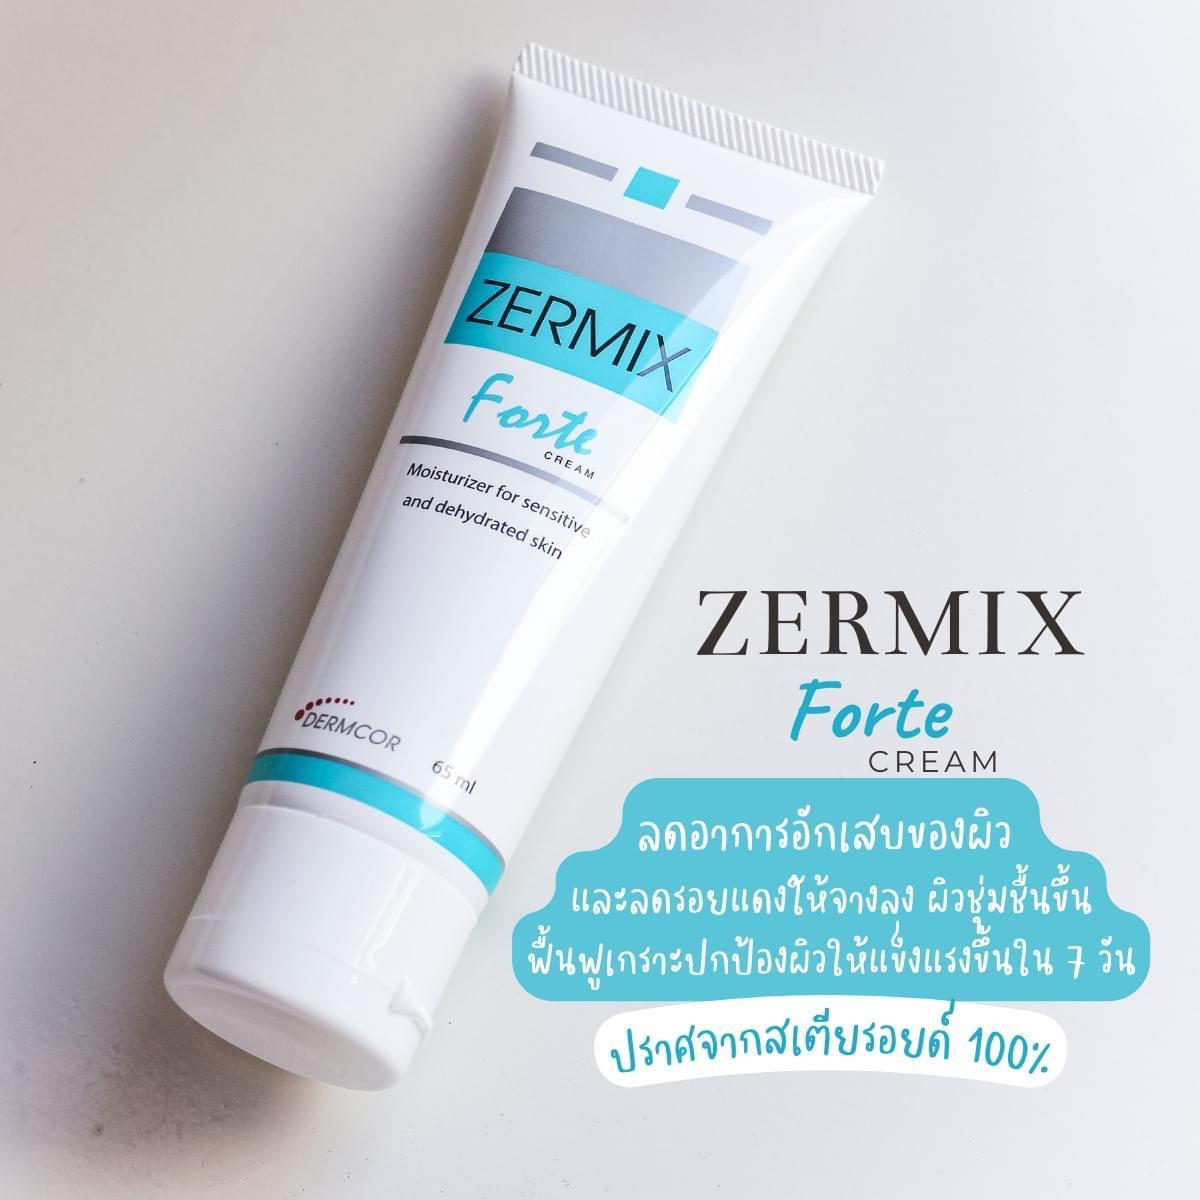 ภาพหน้าปก Zermix Forte Cream สกินแคร์ กู้ผิวแพ้ง่าย ให้ผิวหน้ากลับมาแข็งแรง เนียนนุ่ม! ชุ่มชื้น! ที่:0